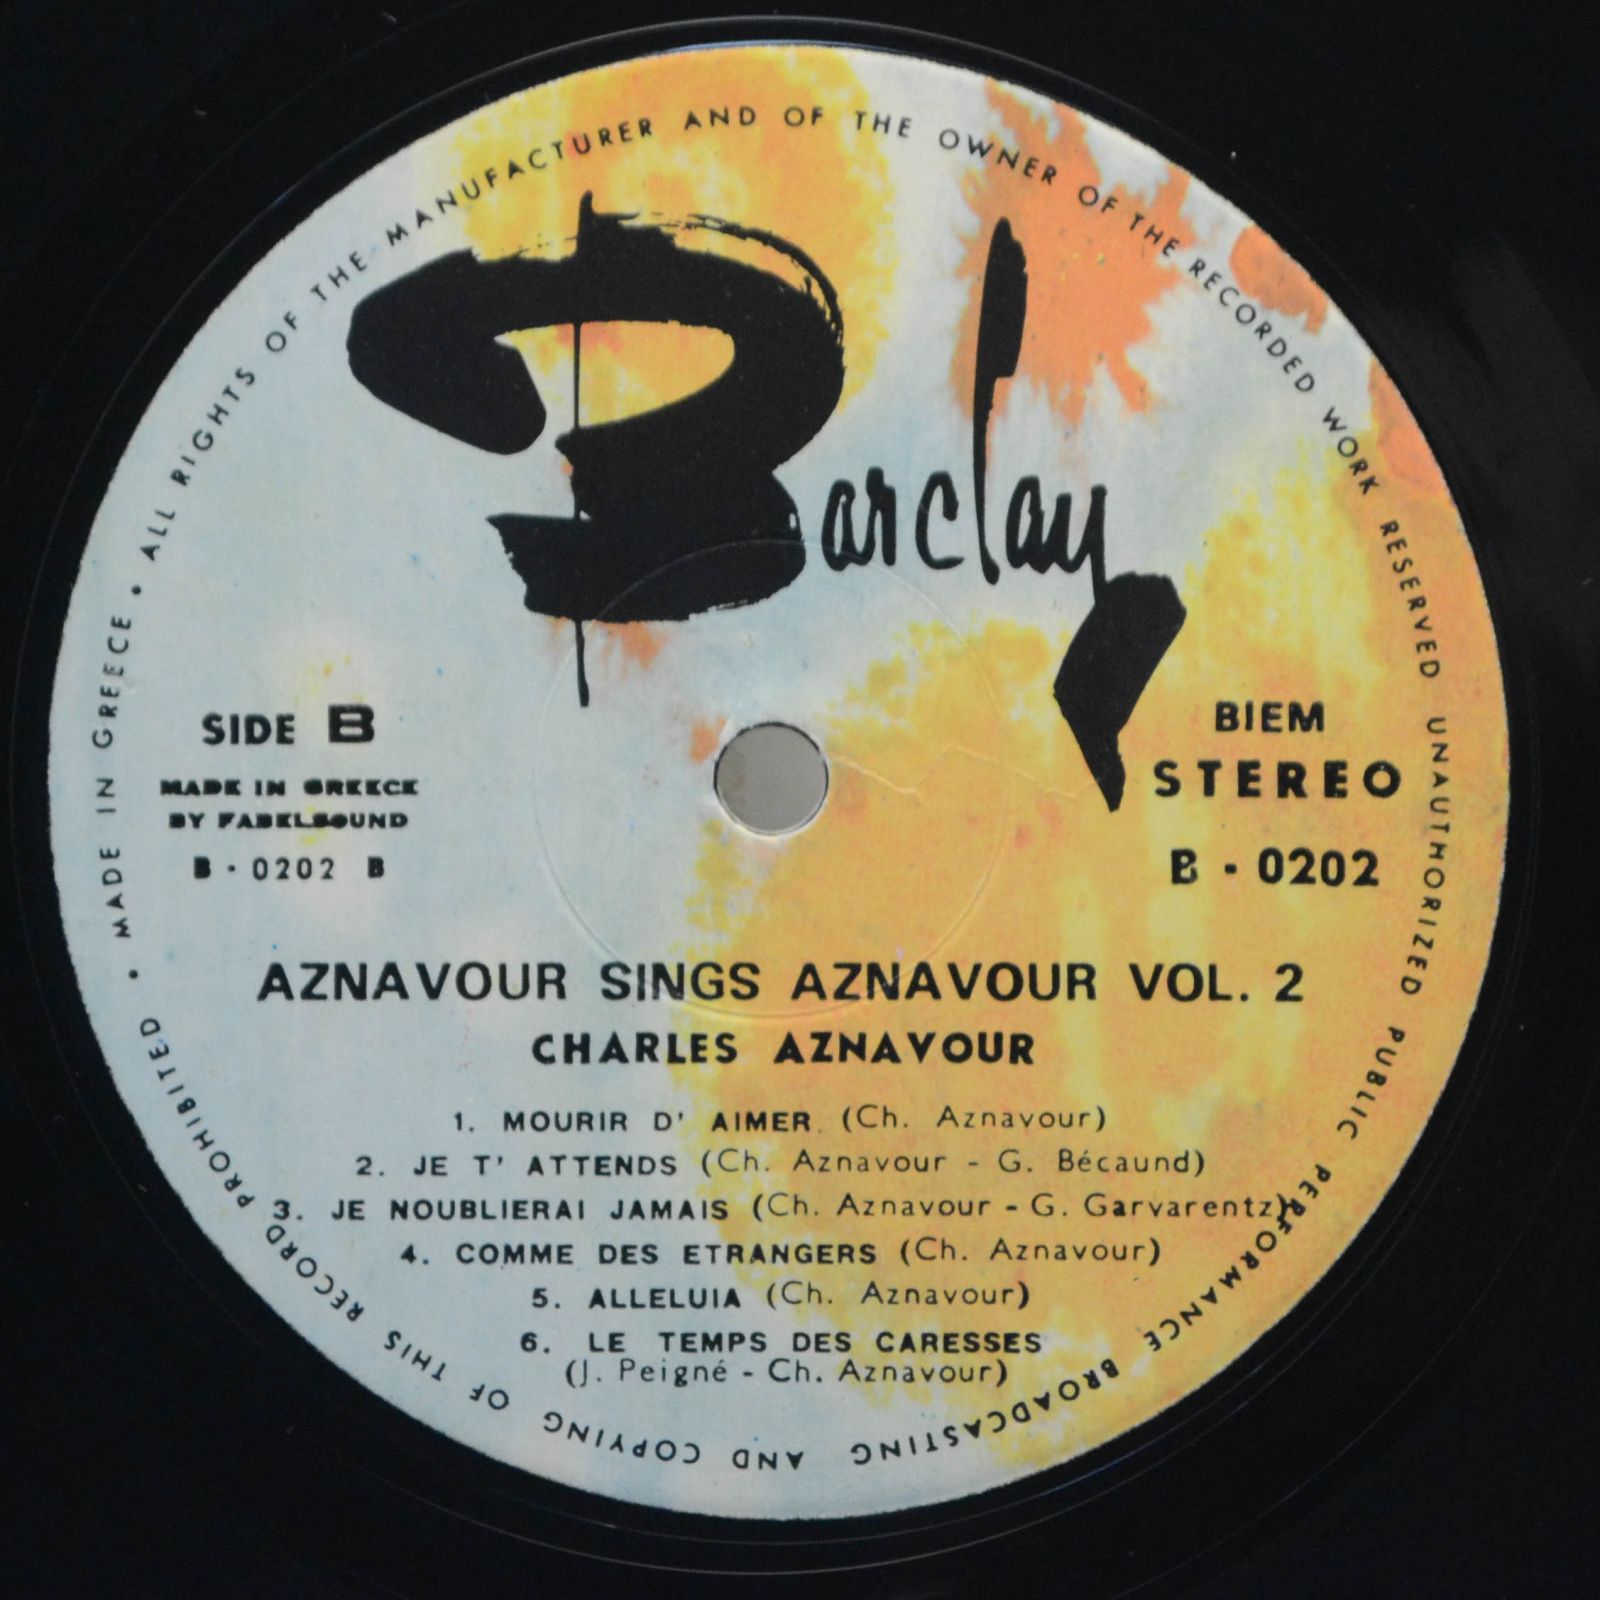 Charles Aznavour — Aznavour Sings Aznavour Vol. 2, 1971